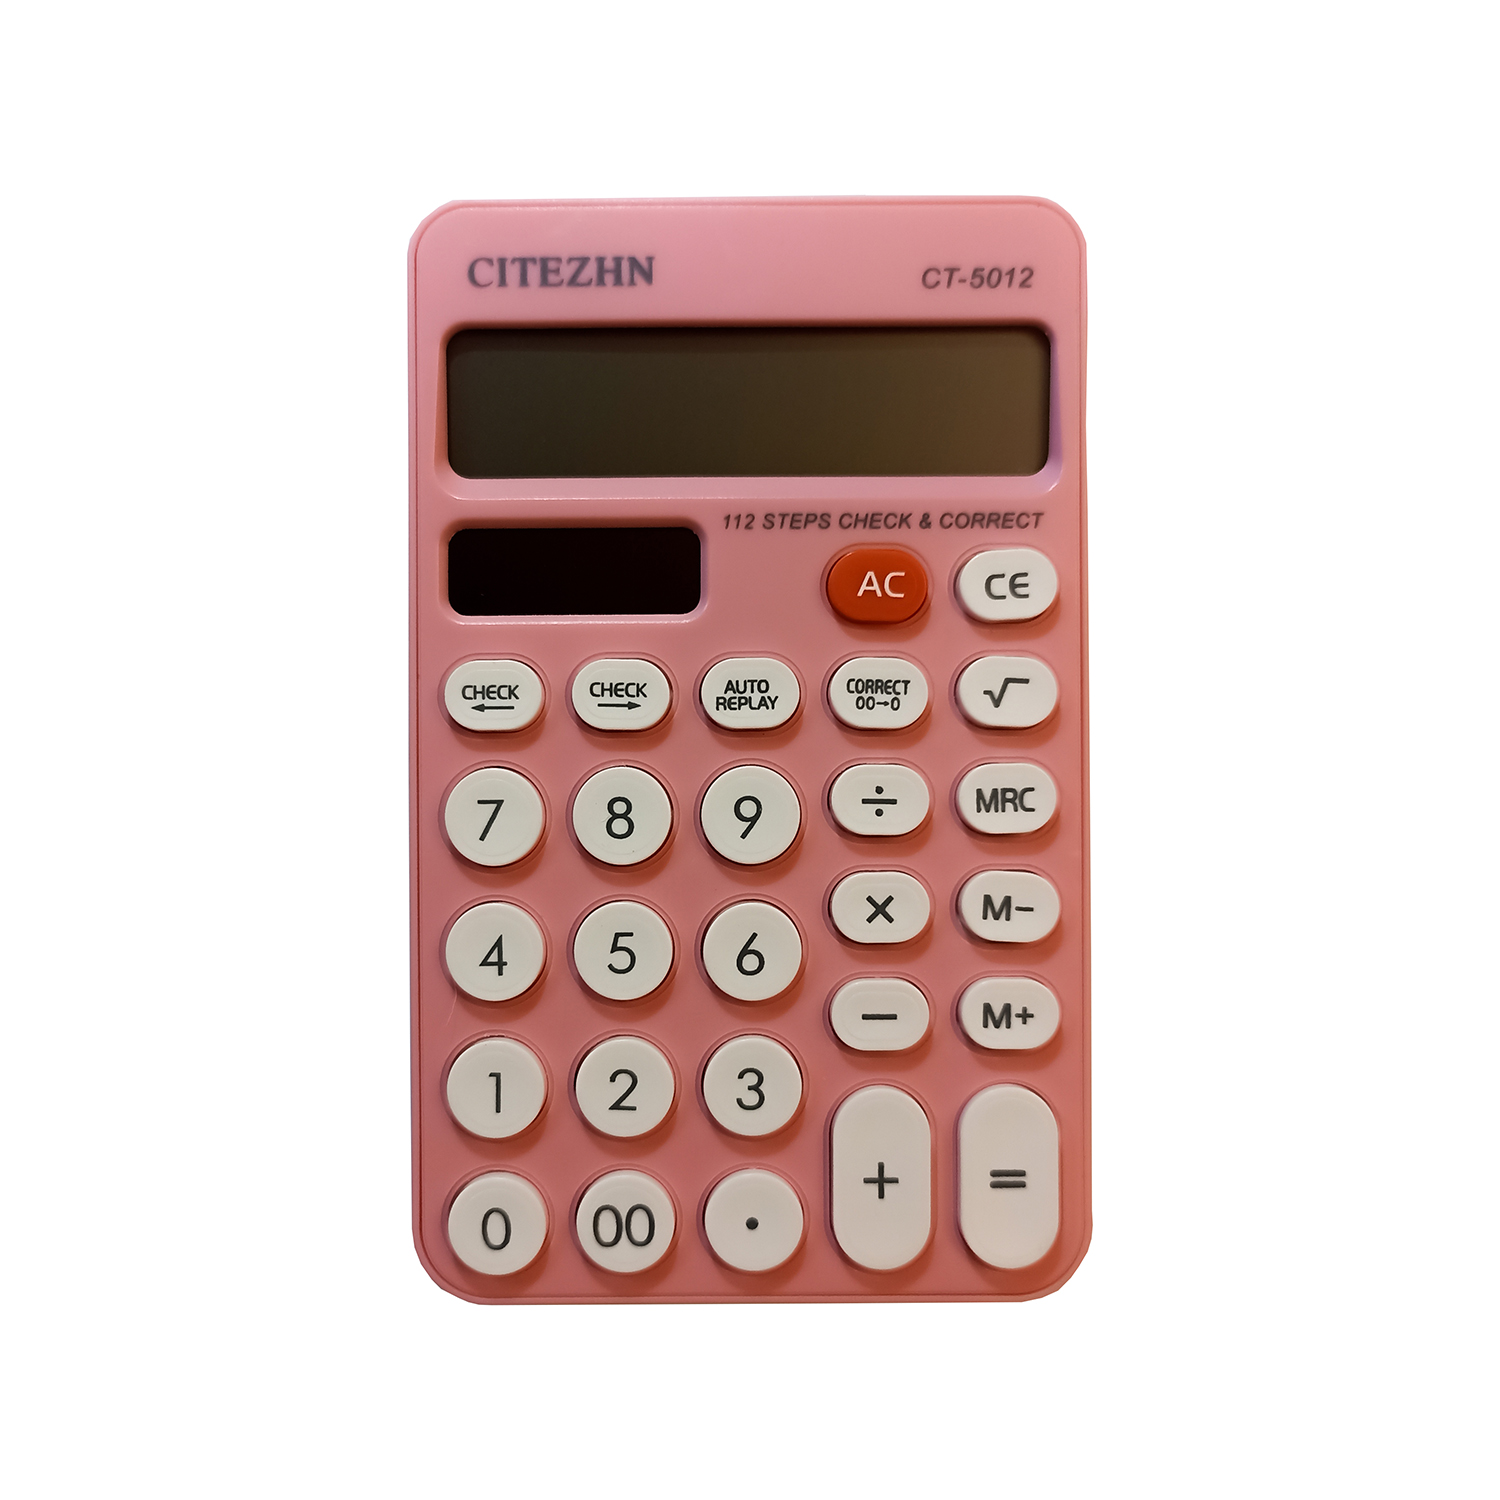 ماشین حساب سیتژن مدل CT-5012